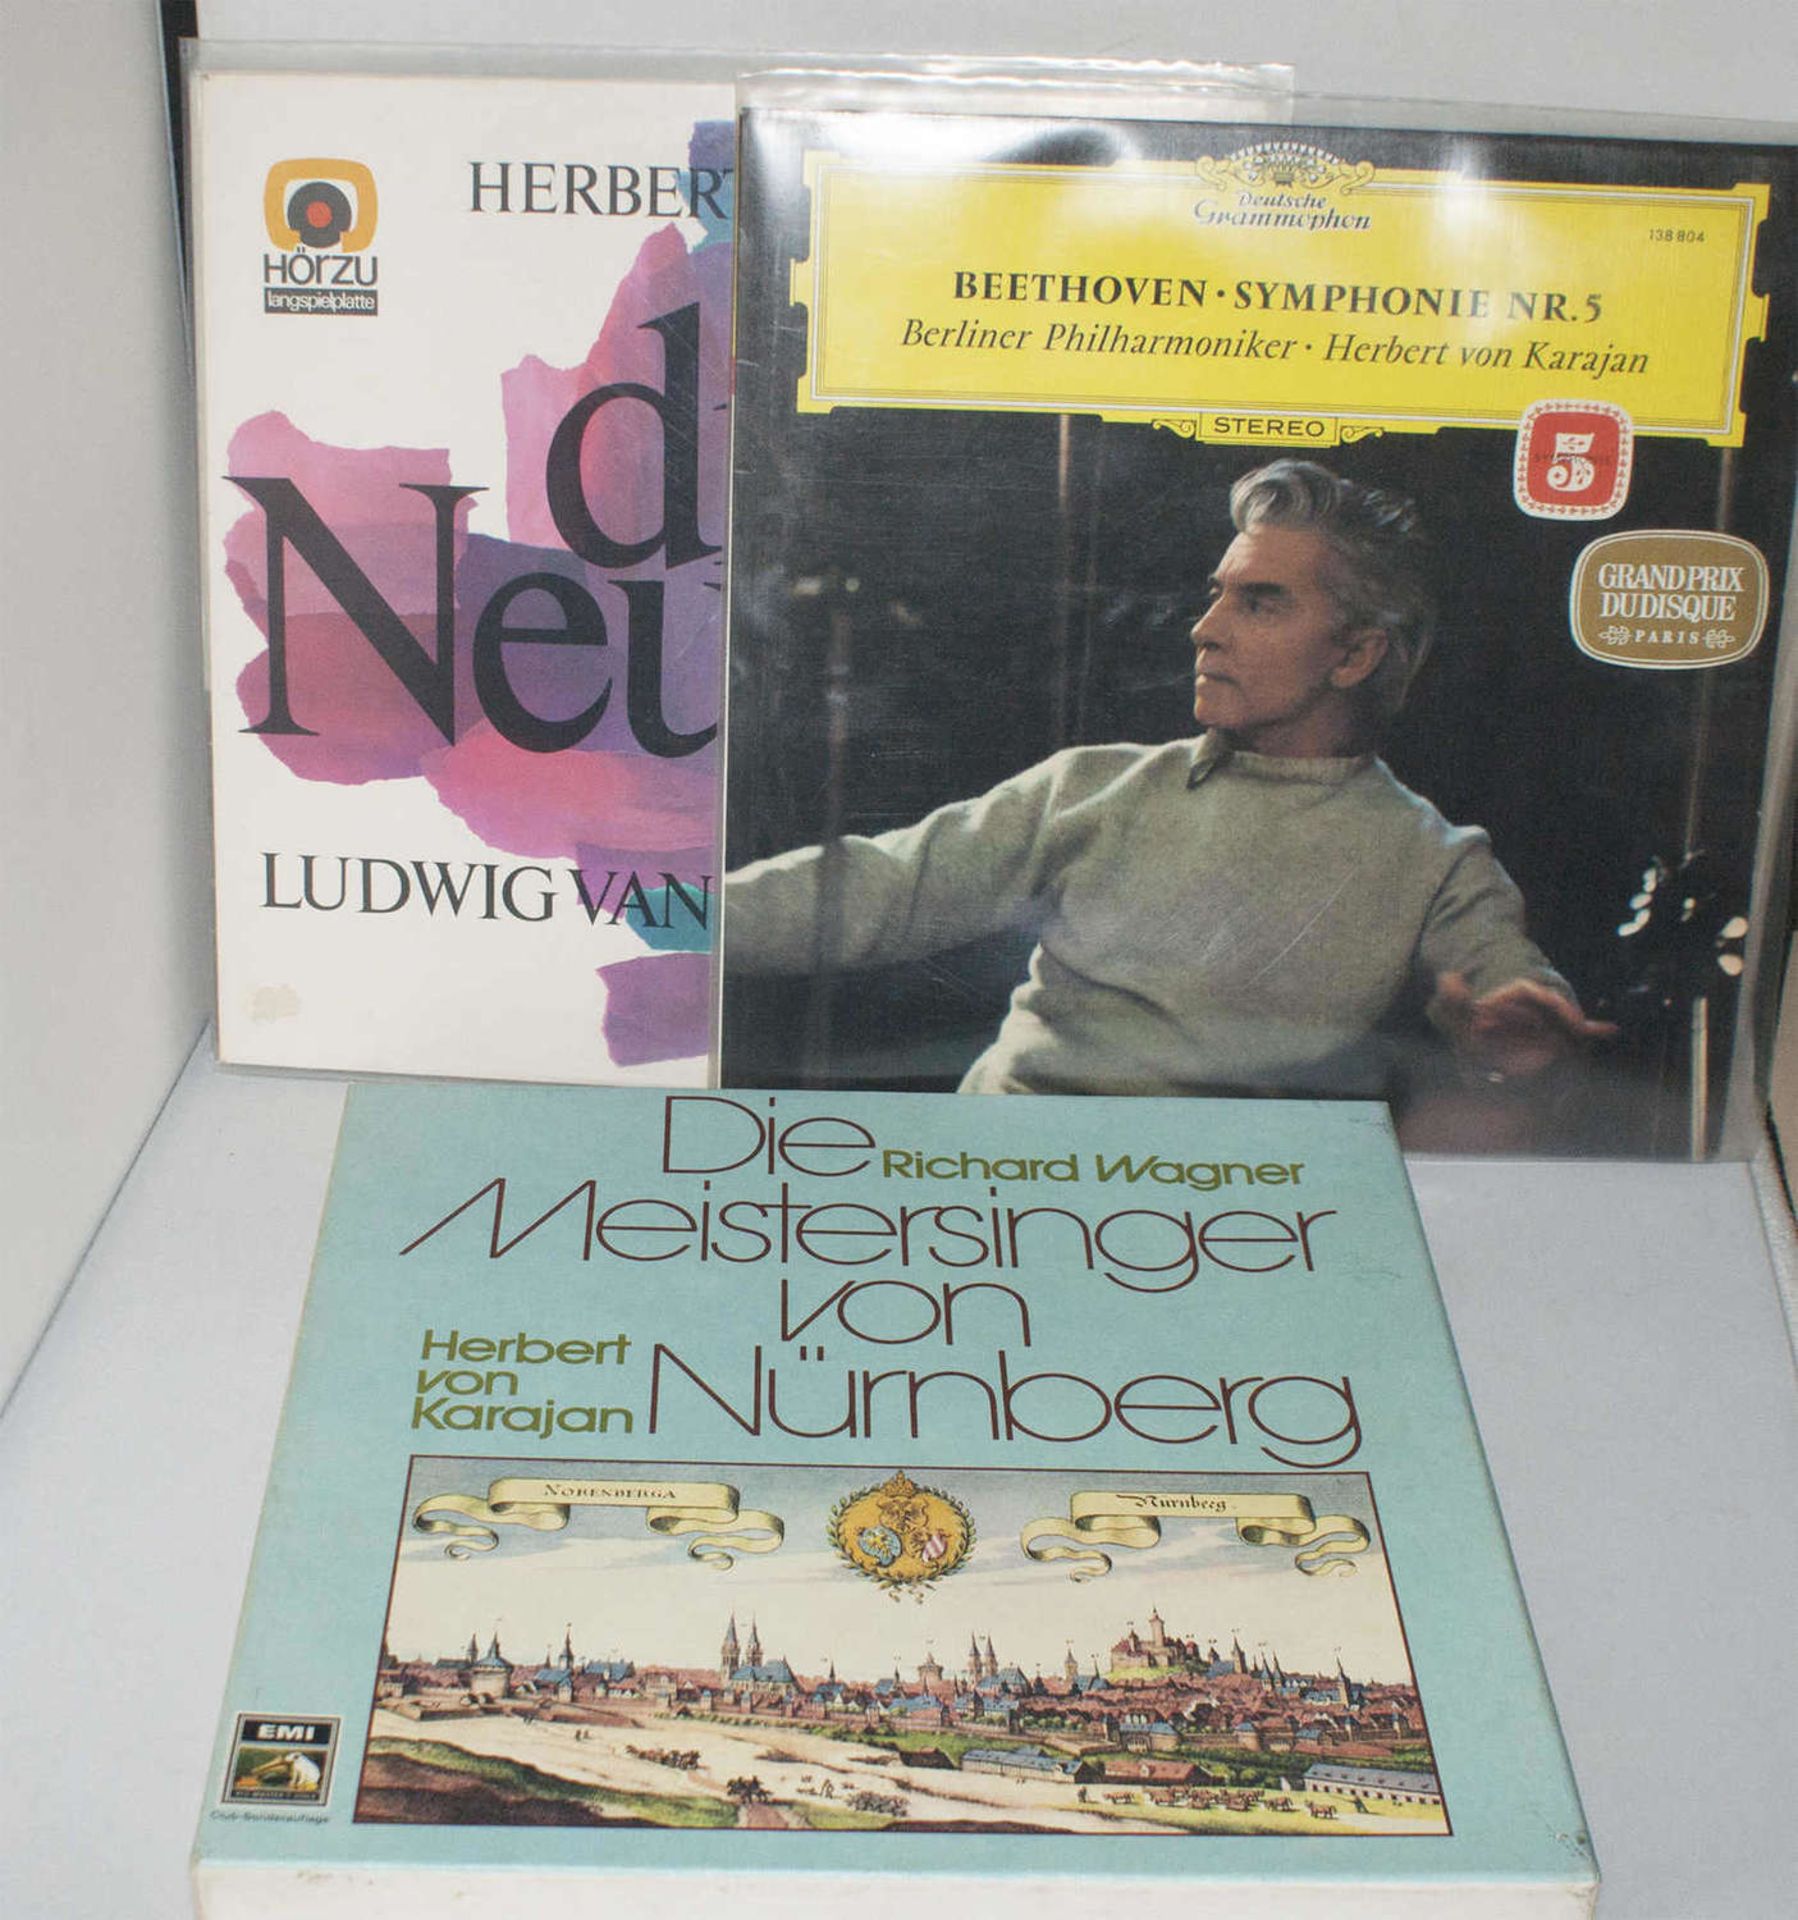 Lot Schallplatten, Thema "Herbert von Karajan", dabei Richard Wagner, Symphonie Nr. 5, etc. Guter